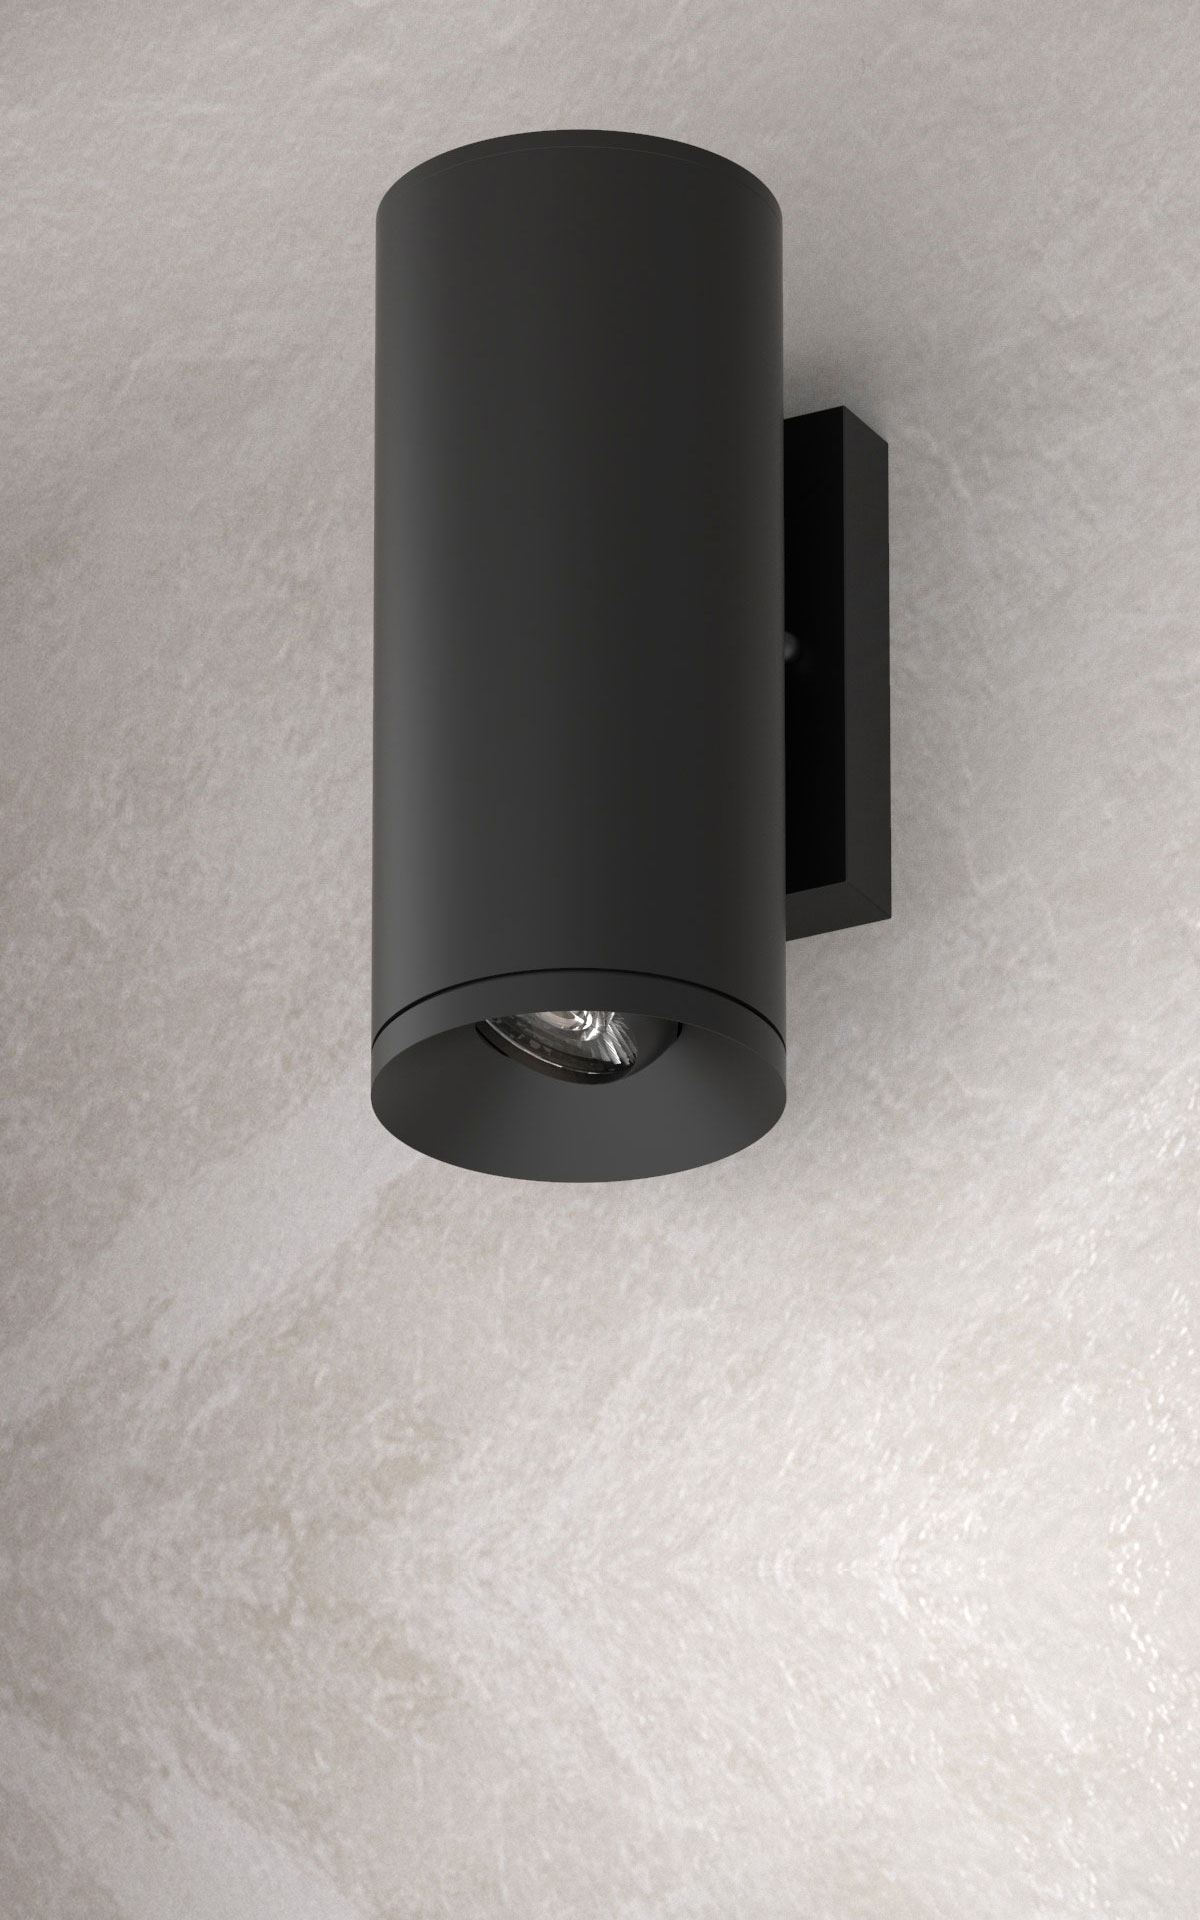 5" Round Adjustable Lens Wall Sconce LED Cylinder Lighting